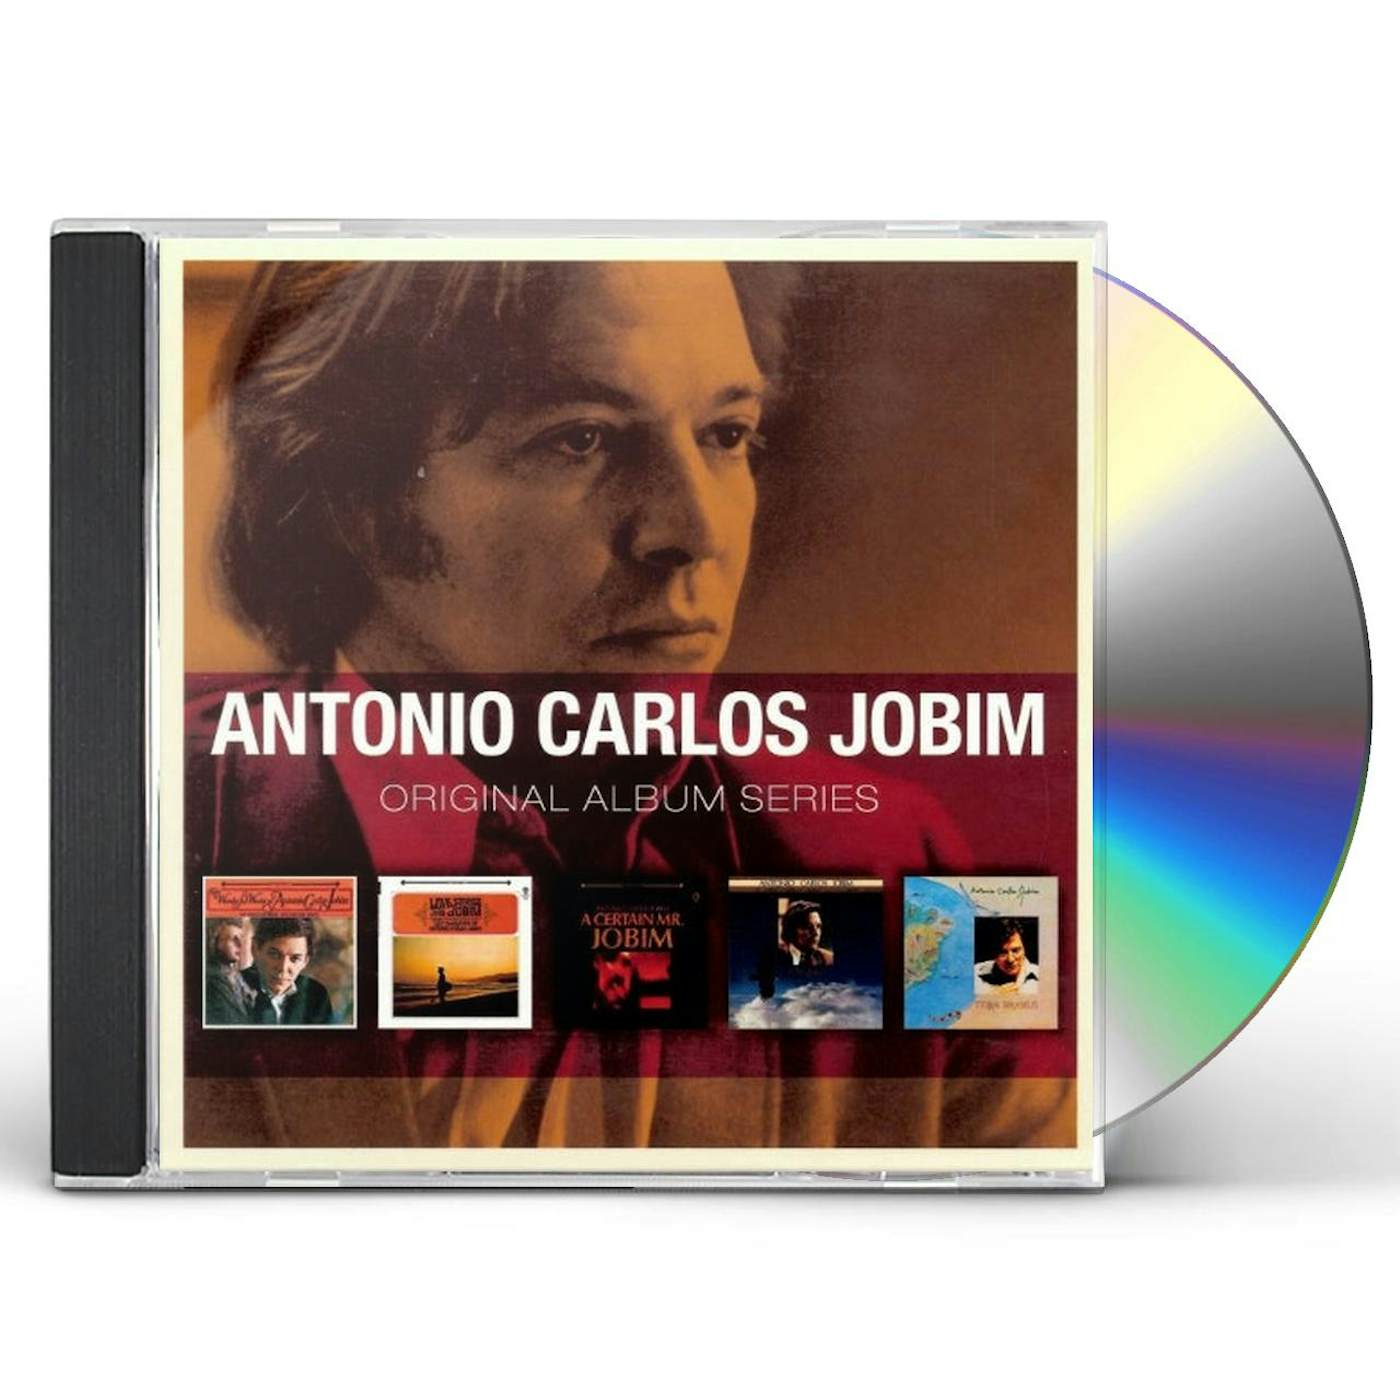 Antônio Carlos Jobim ORIGINAL ALBUM SERIES CD